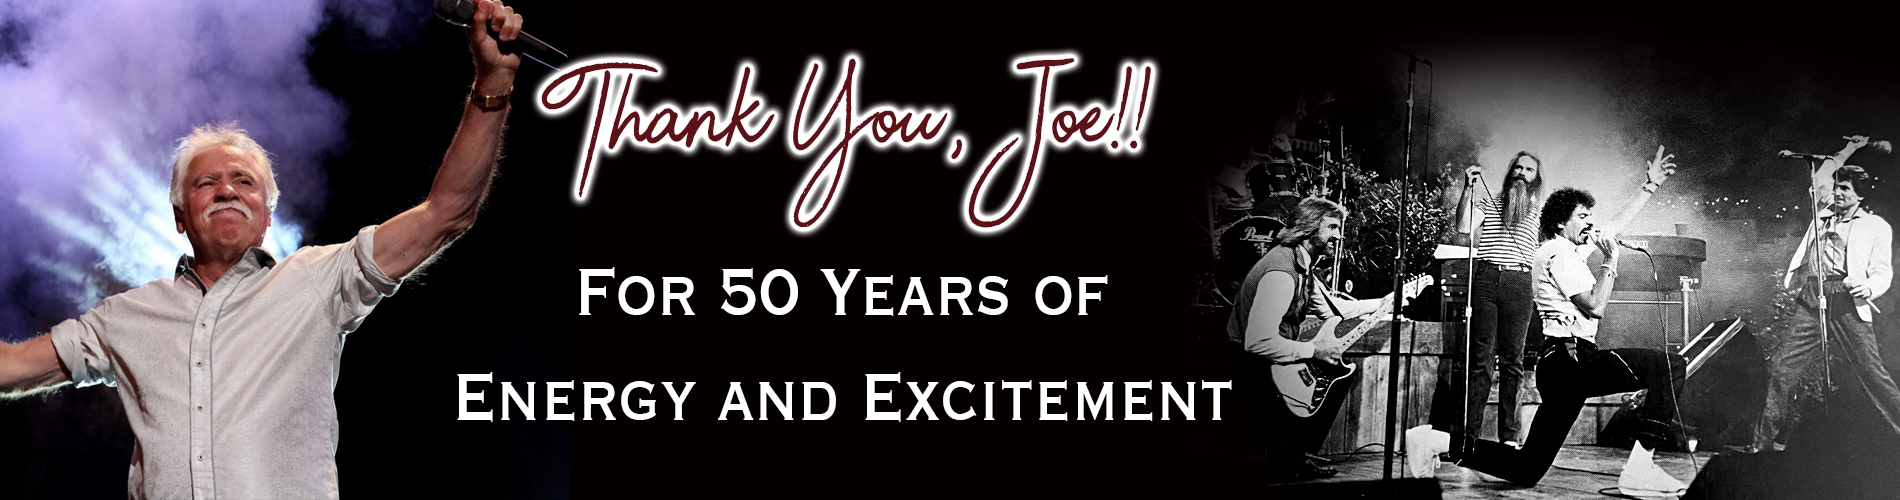 Thank you, Joe!